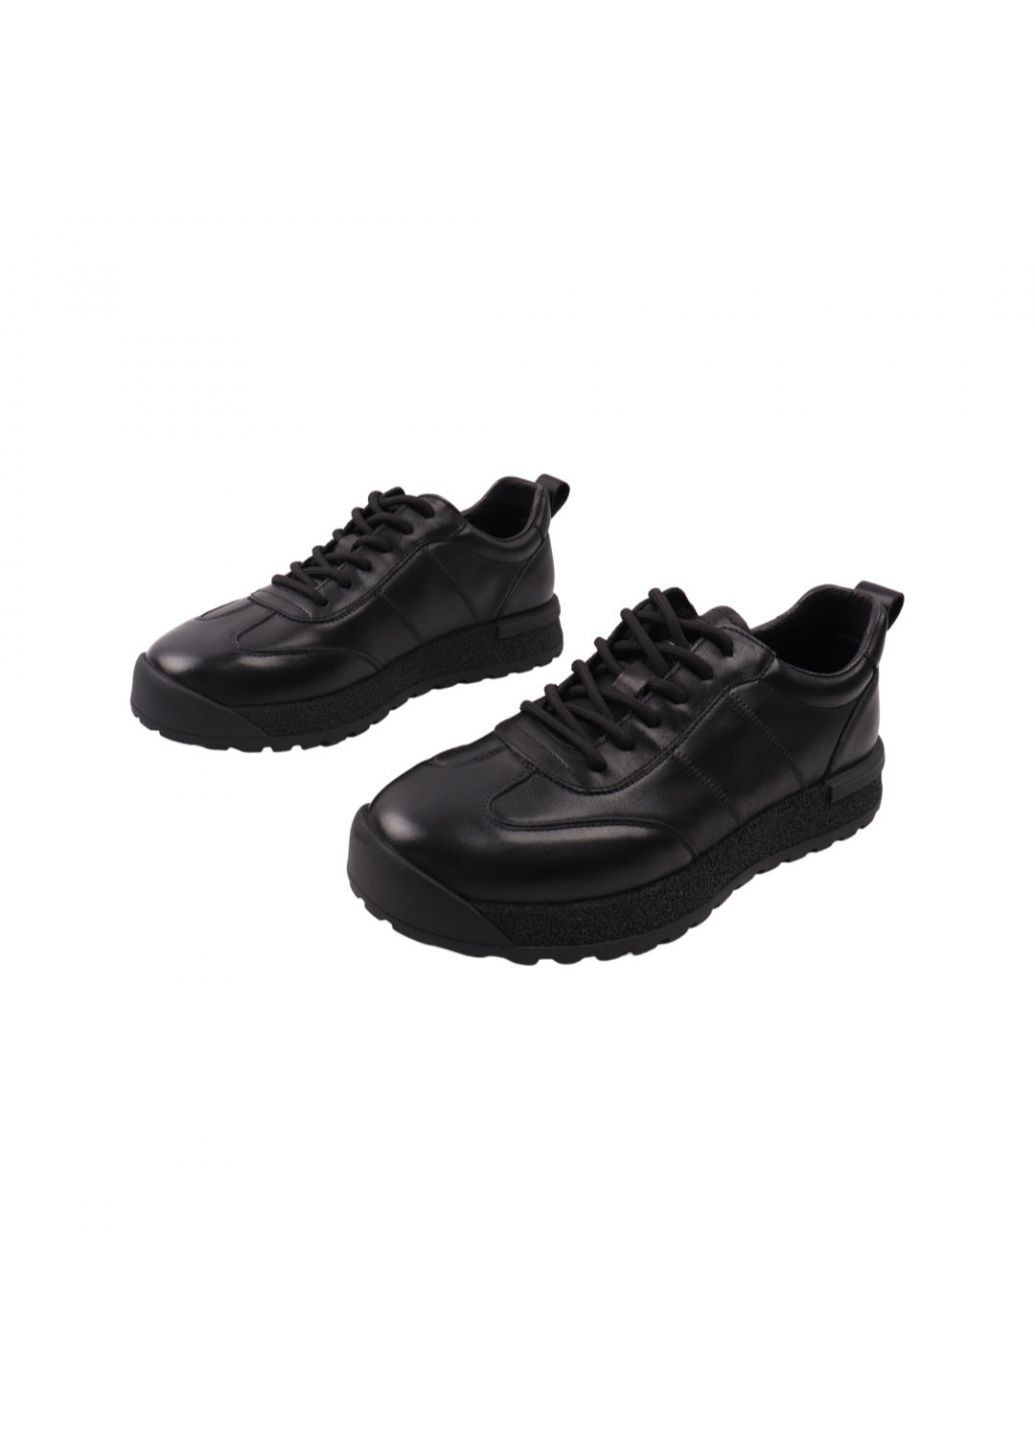 Черные кроссовки мужские черные натуральная кожа Lifexpert 1086-22/23DTC